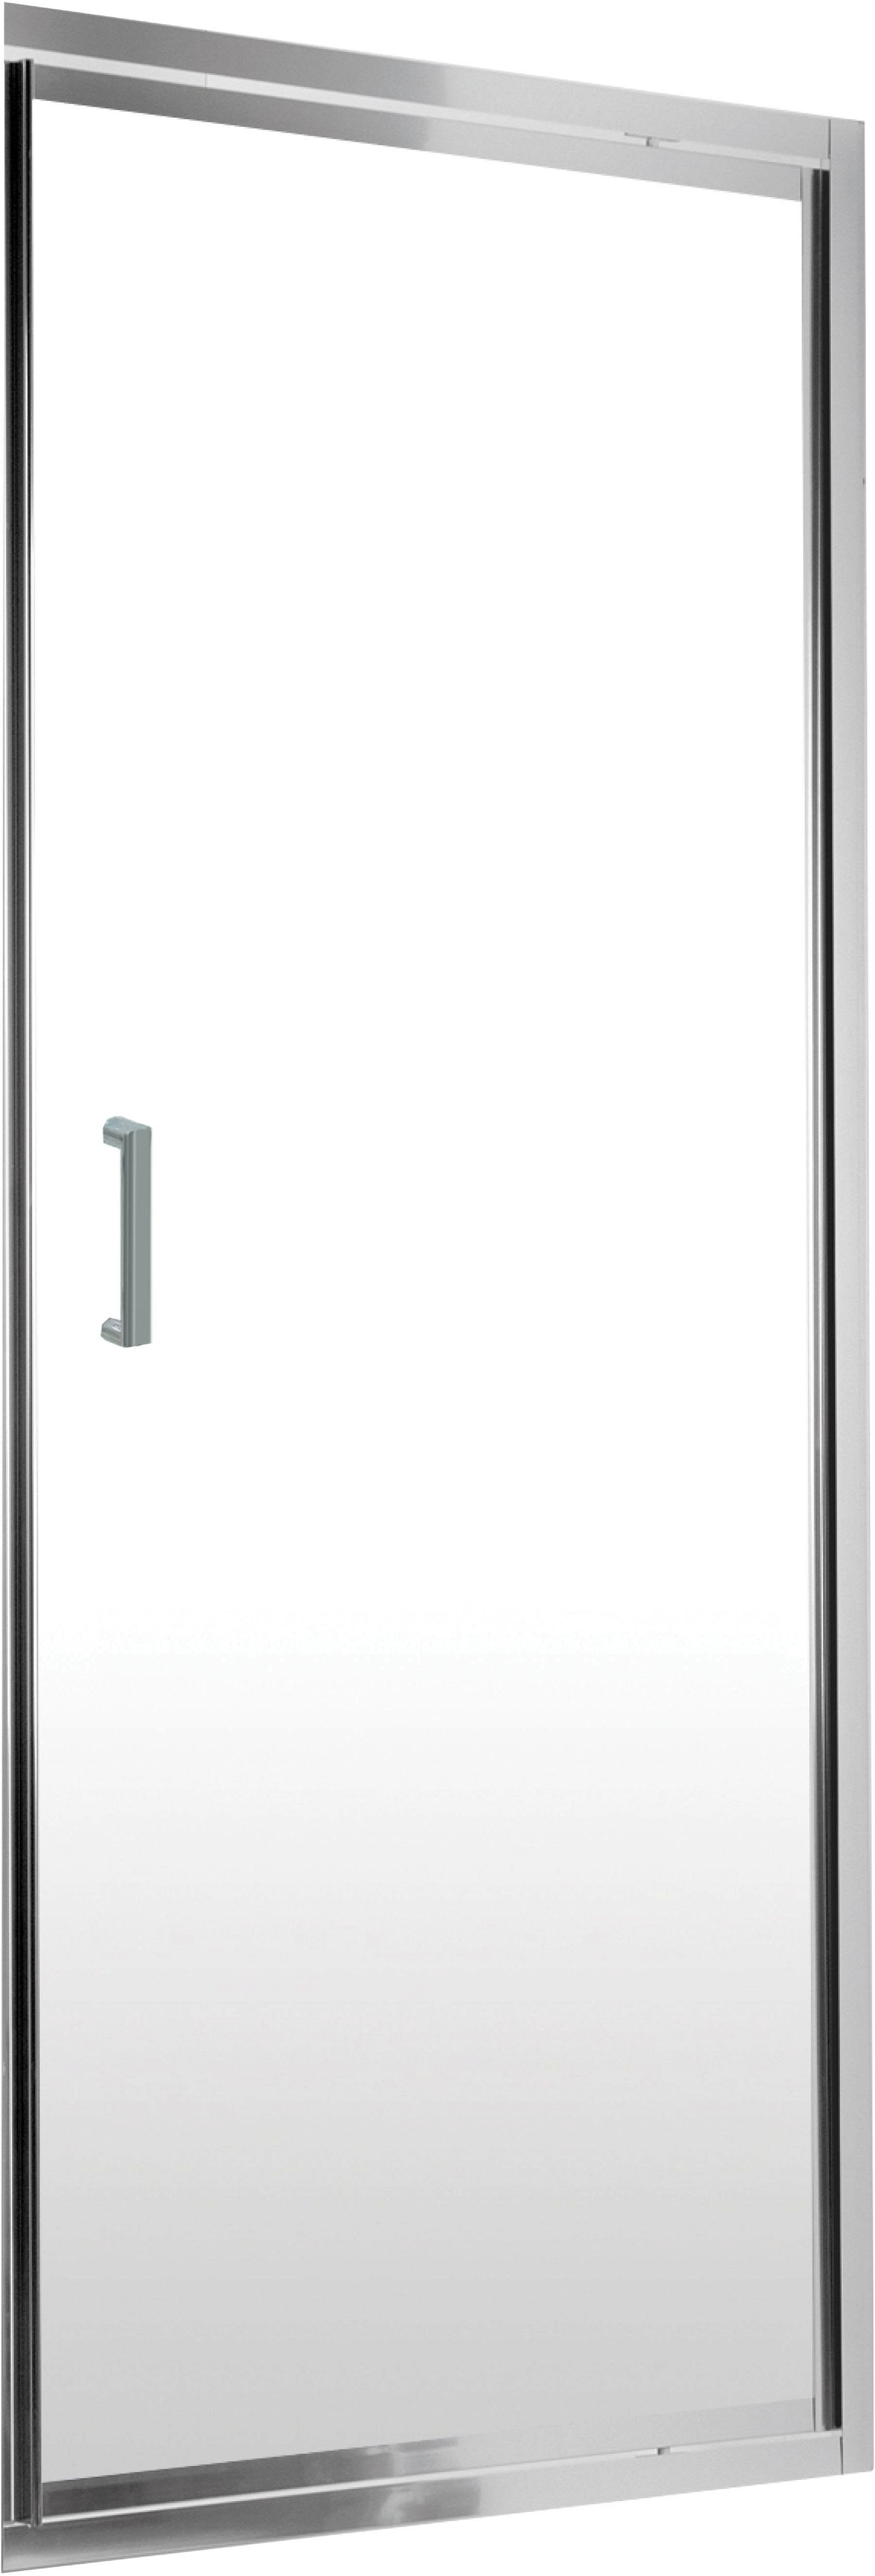 Drzwi prysznicowe wnękowe 90 cm - uchylne - KTJ_011D - Główne zdjęcie produktowe